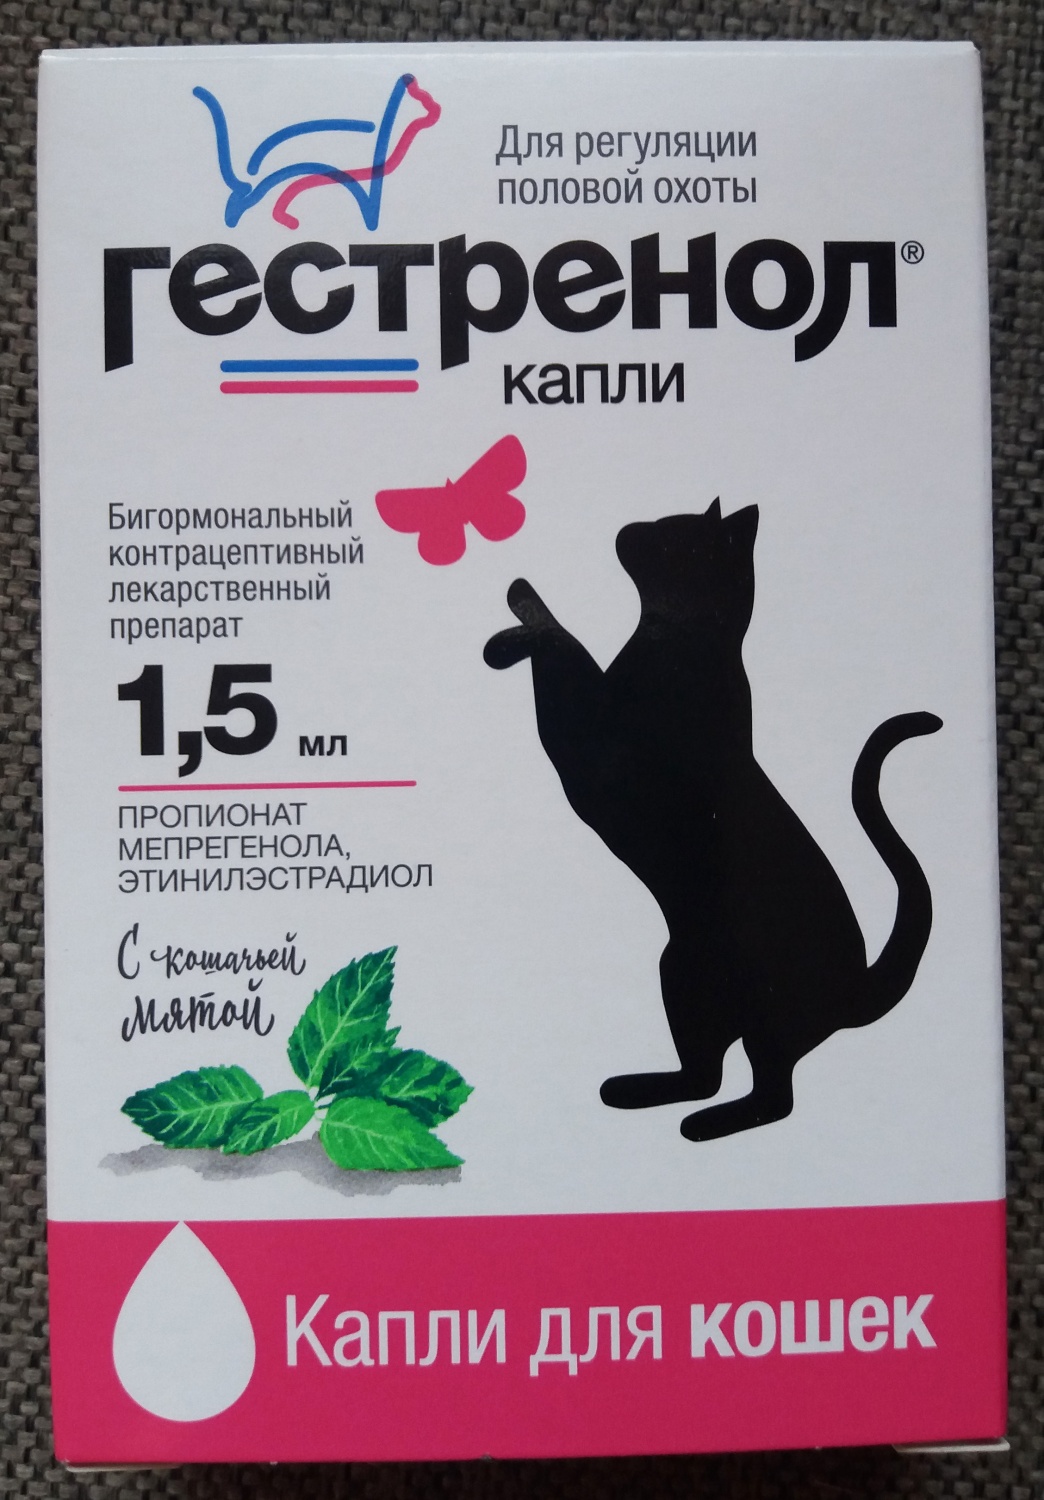 Капли гестренол для кошек - инструкция по применению препарата